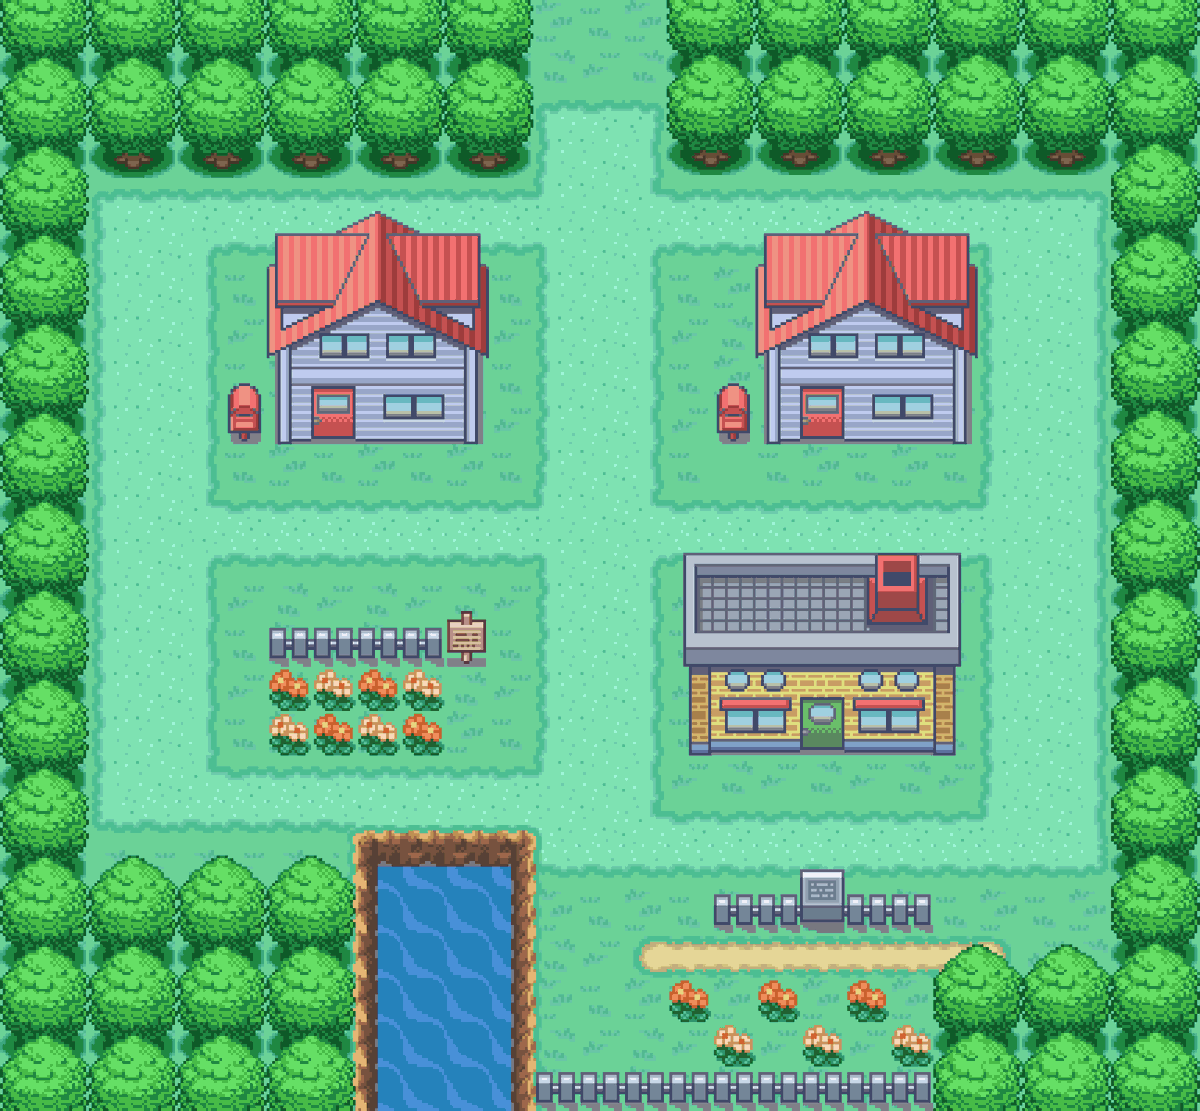 I made something, I hope y'all like it!

#pixelart #mapdesign #pokemon